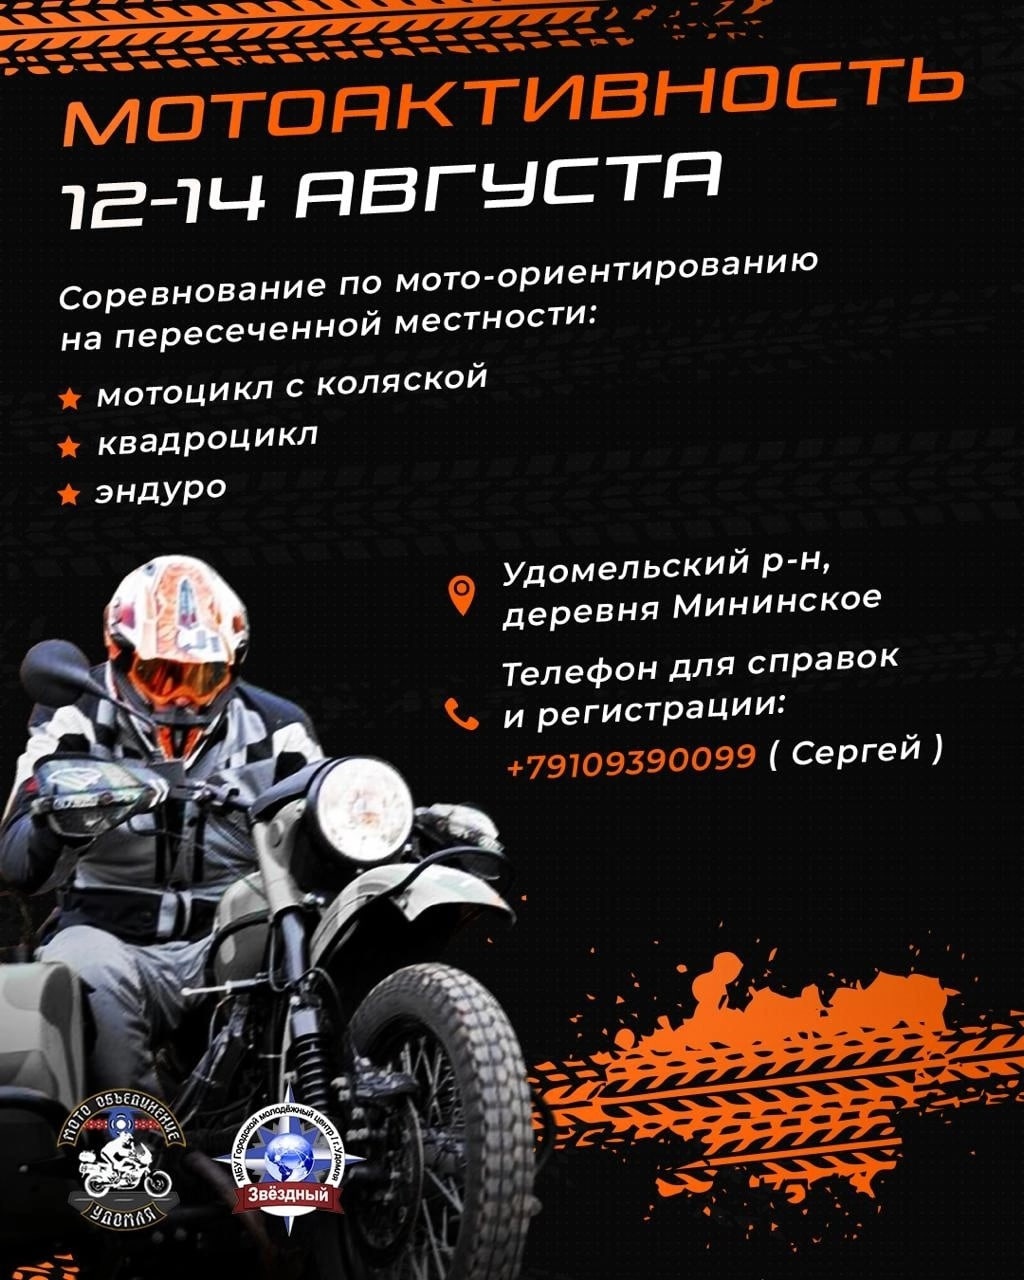 МотоЦиклы: Мотоактивность, календарь Чемпионата, красоты болговского района и многое другое